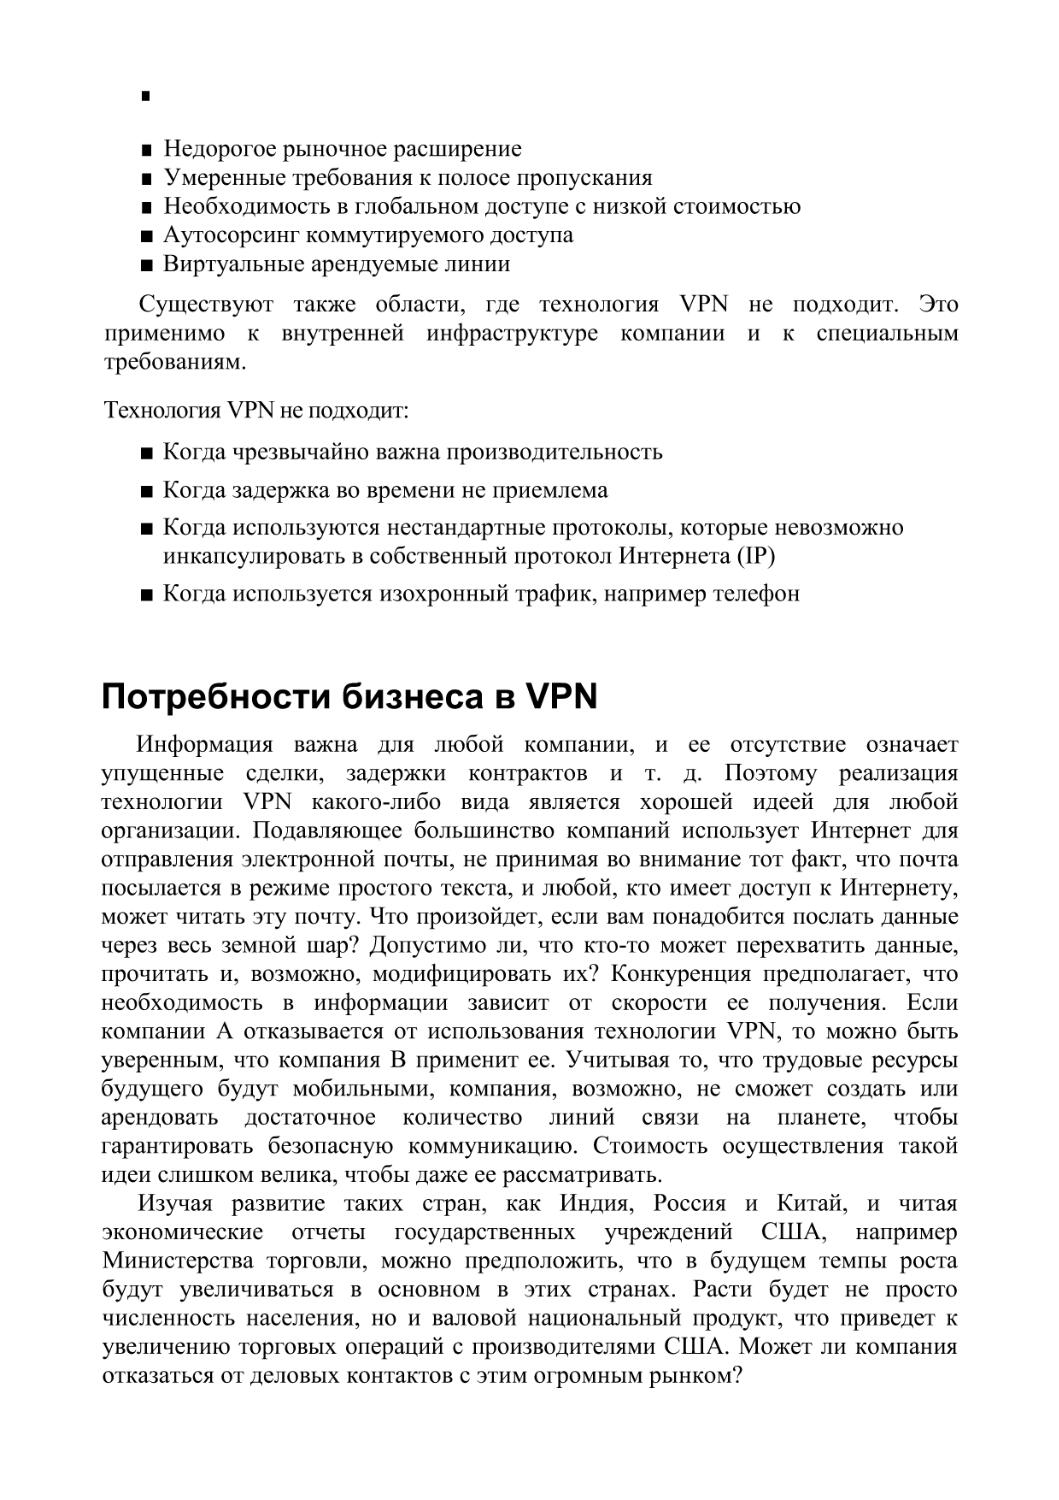 Потребности бизнеса в VPN